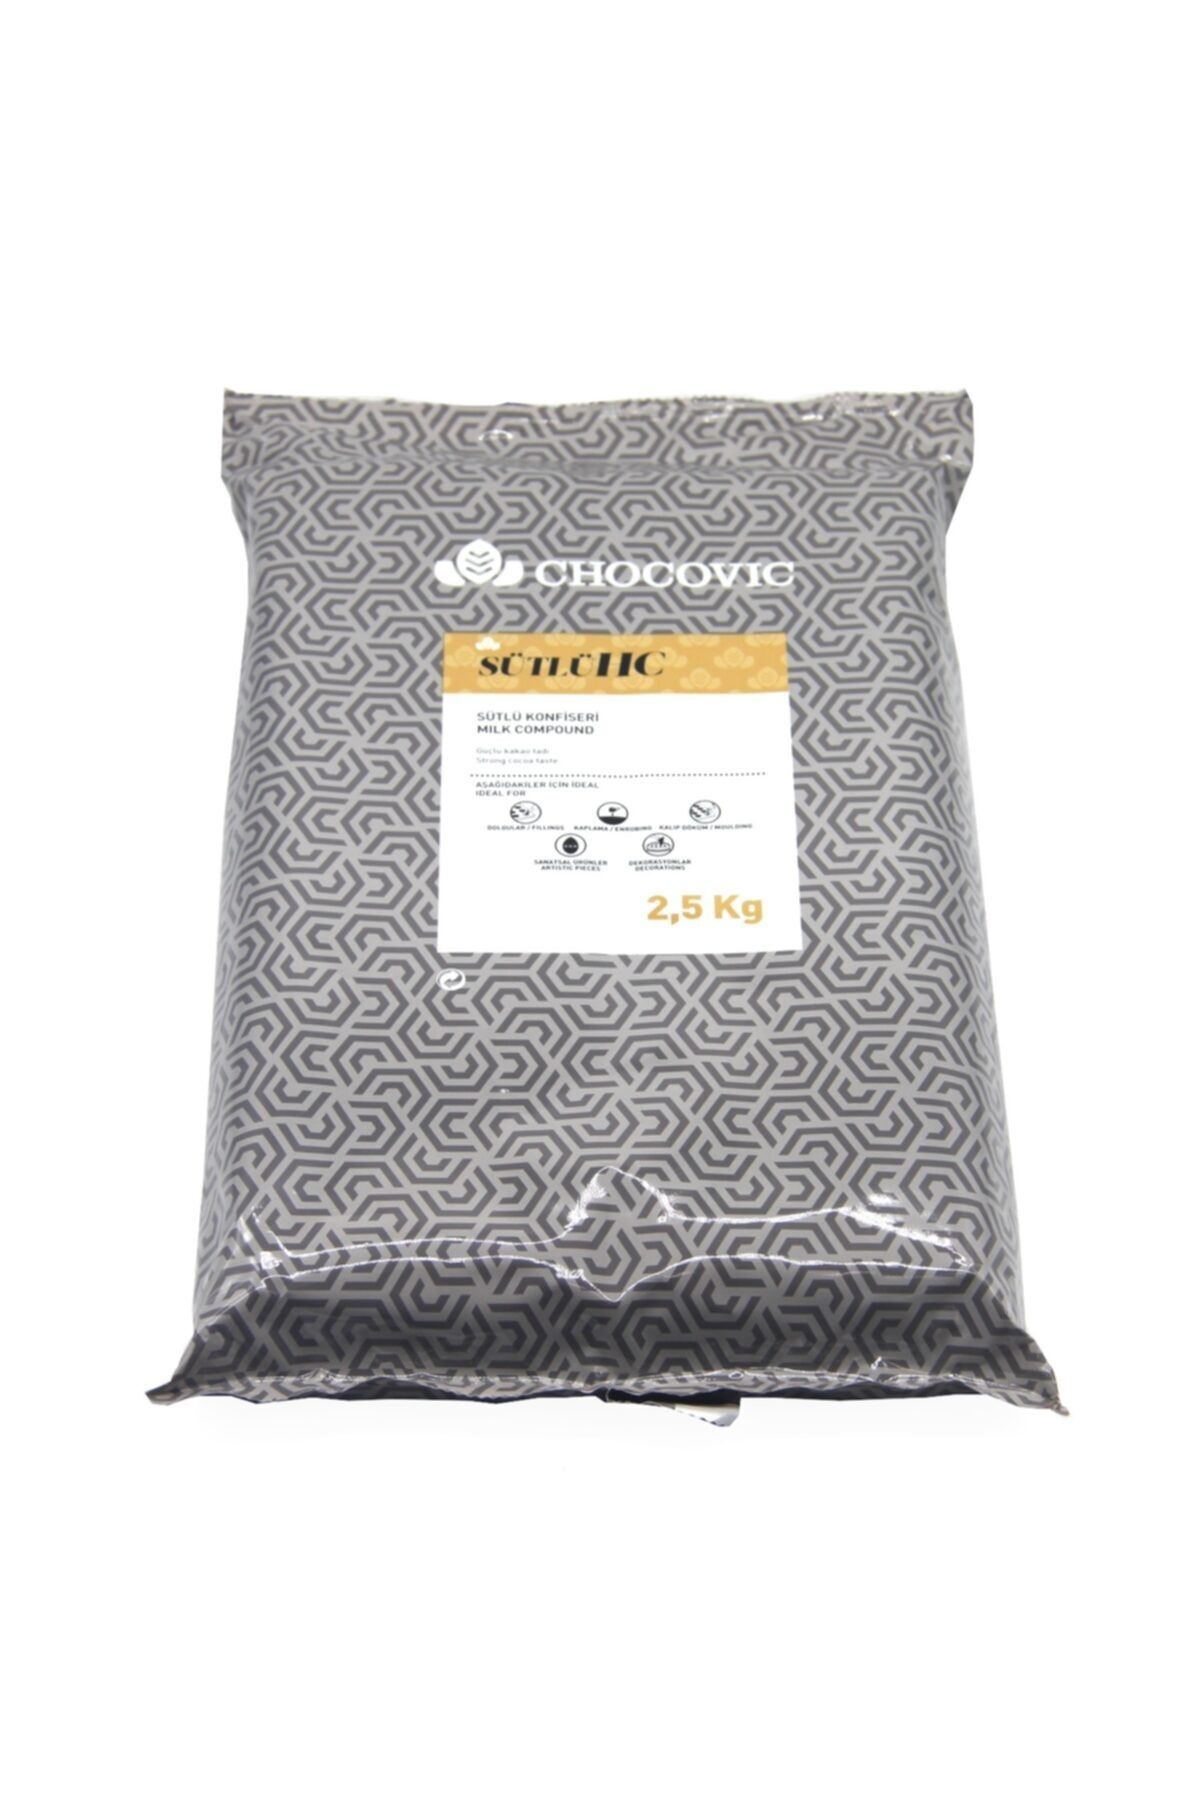 Callebaut Chocovic Sütlü Konfiseri Çikolata (2.5 Kg)